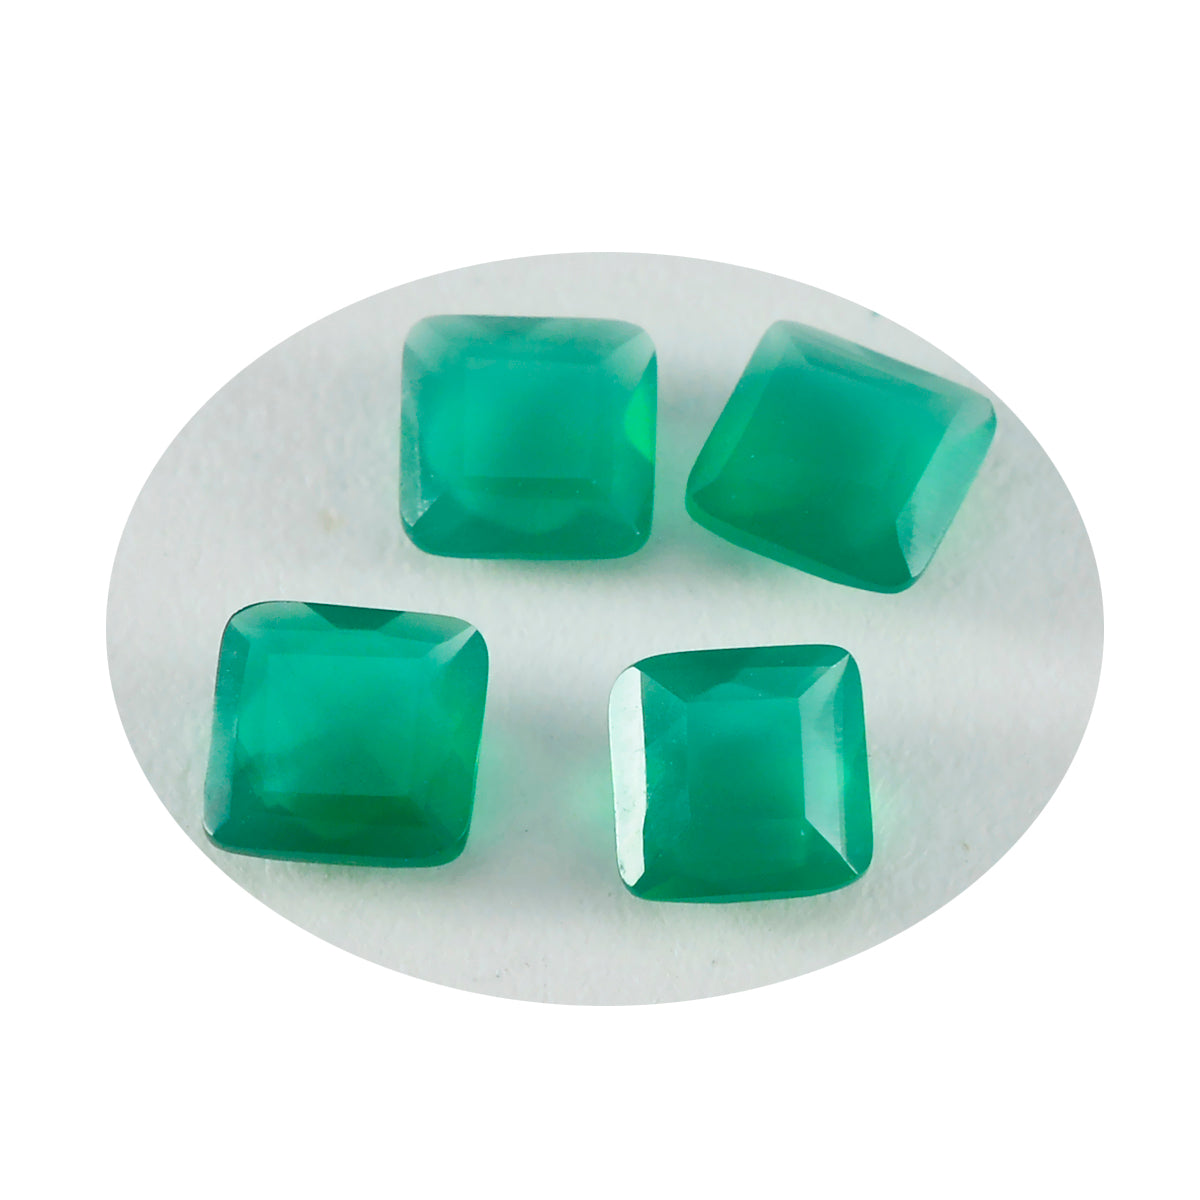 Riyogems 1PC echte groene jaspis gefacetteerd 11x11 mm vierkante vorm schattige kwaliteit losse steen